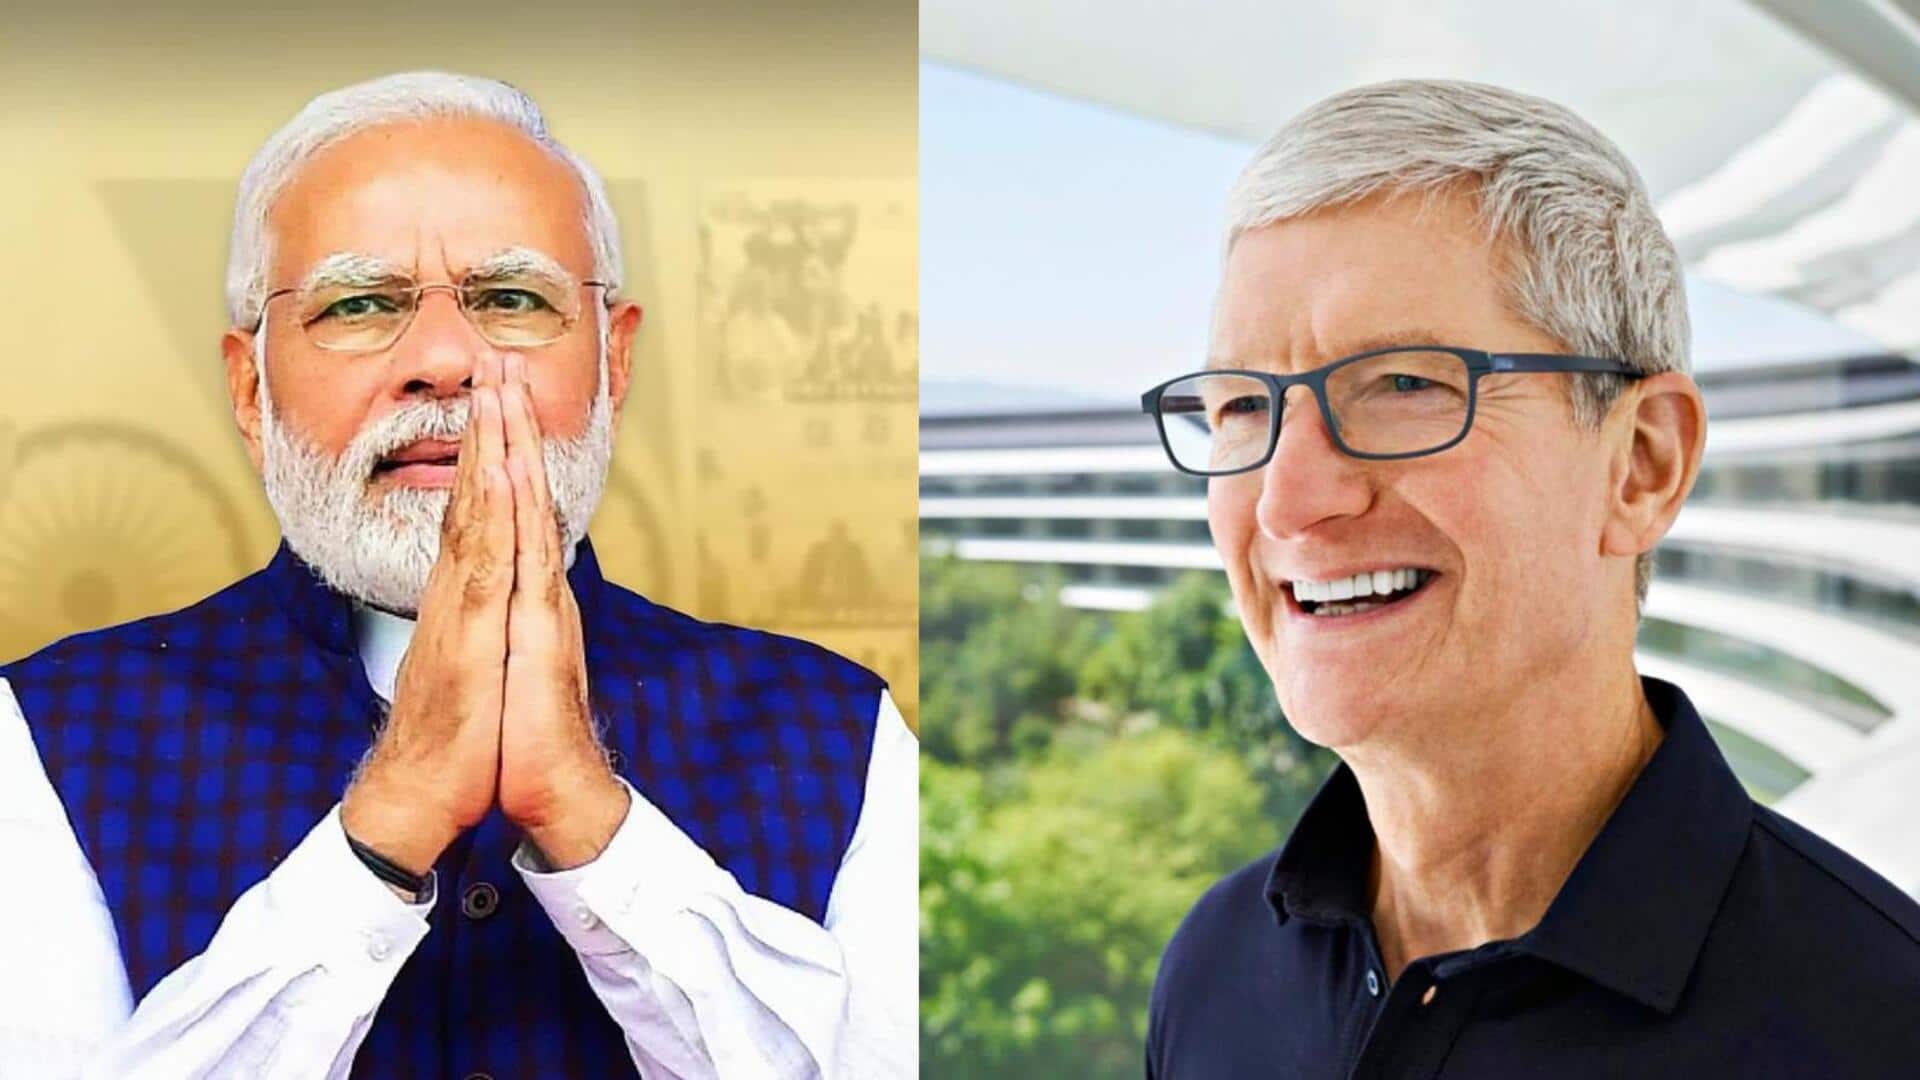 दिल्ली में ऐपल रिटेल स्टोर खोलने से पहले प्रधानमंत्री नरेंद्र मोदी से मुलाकात करेंगे टिम कुक